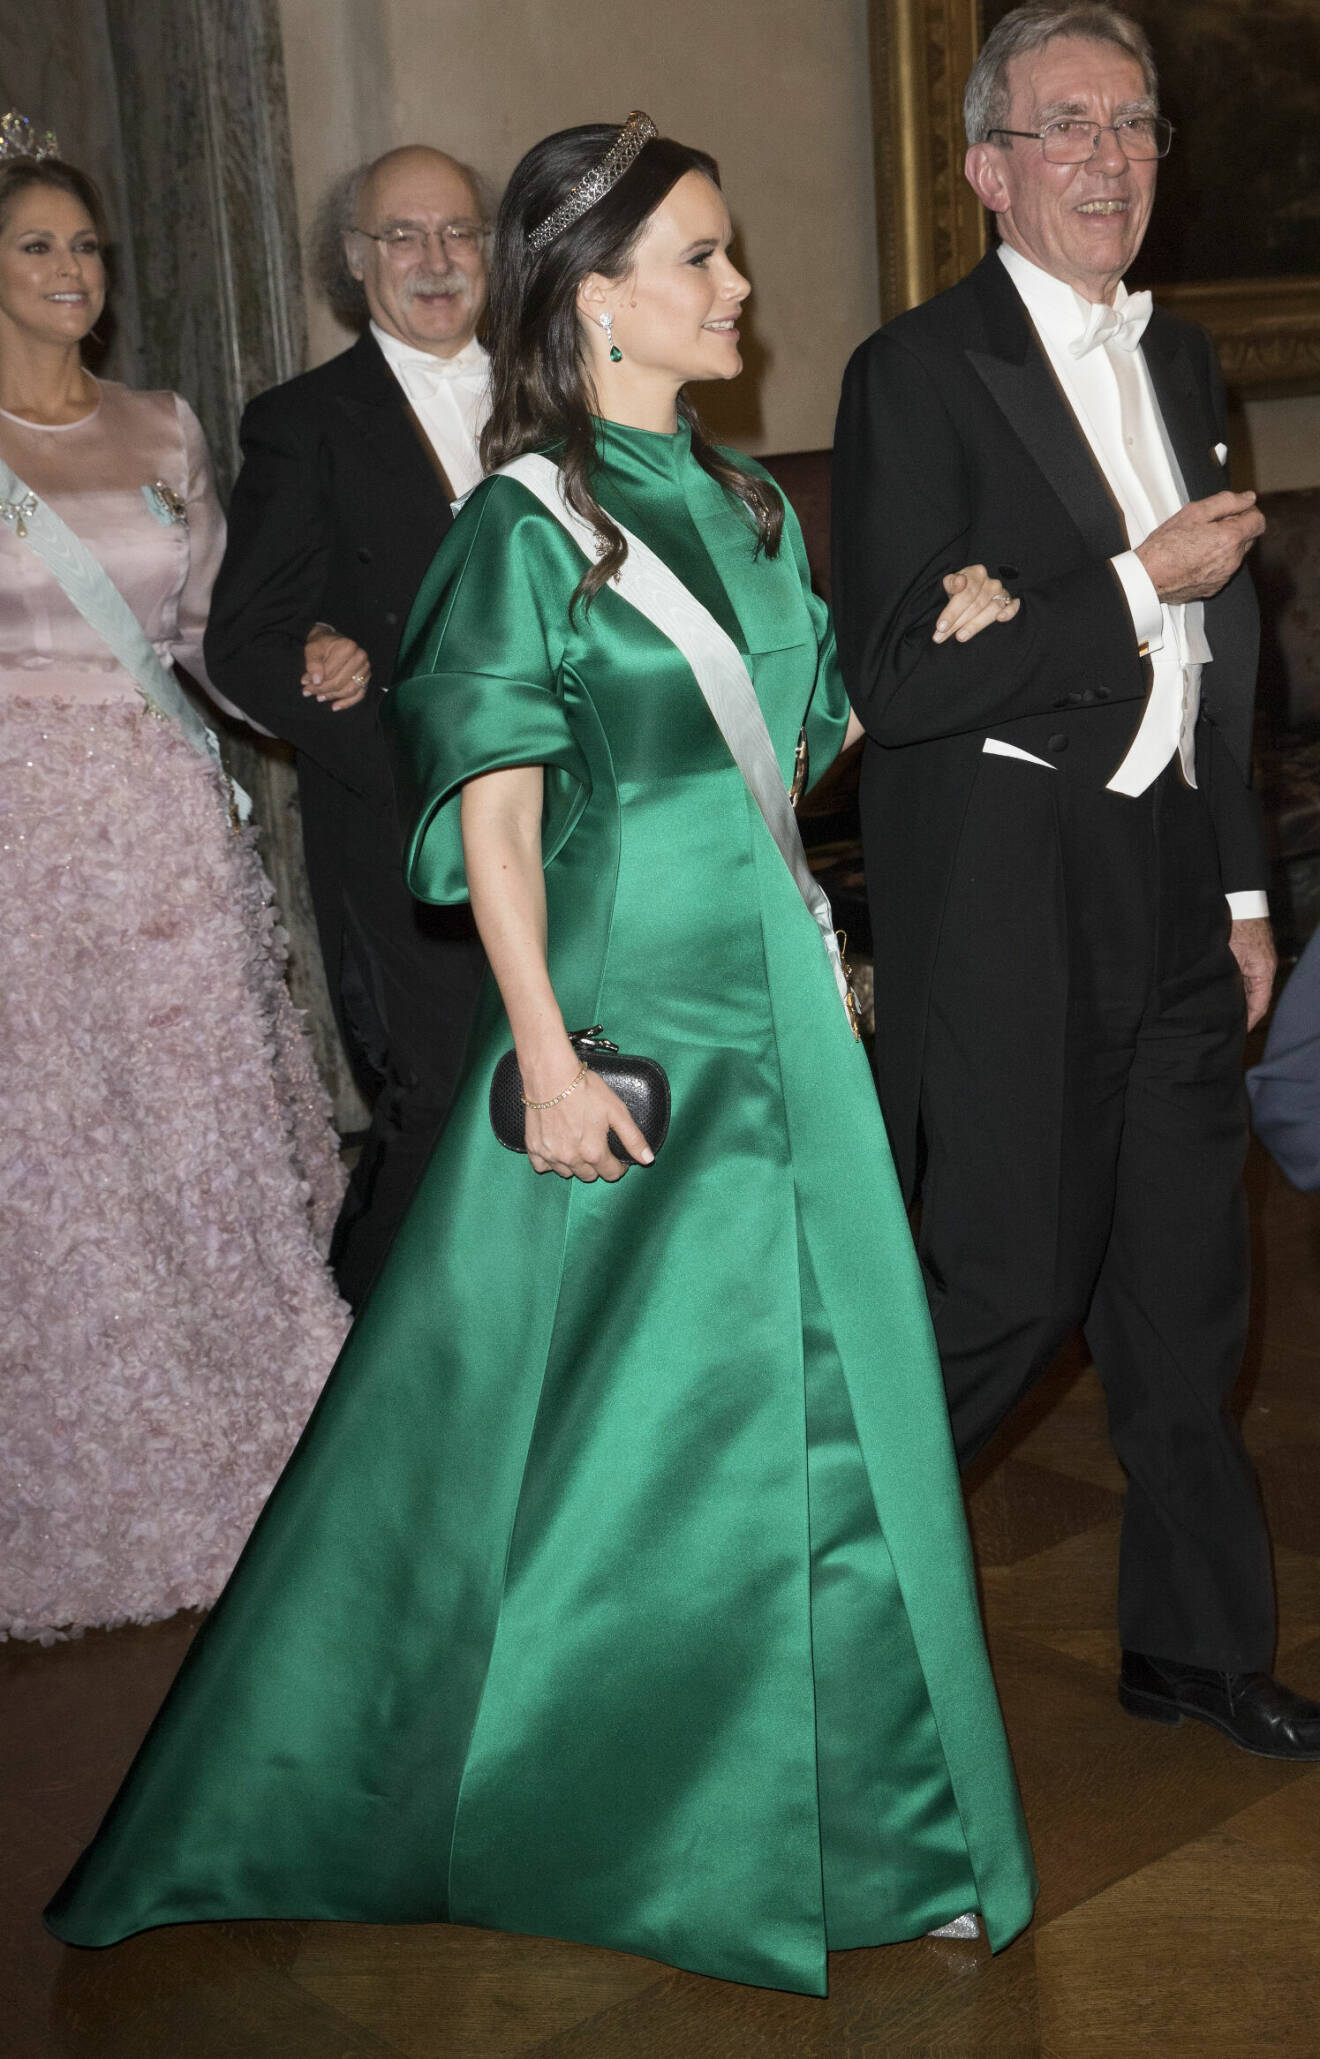 Prinsessan Sofia på Nobel 2017 i grön Nobelklänning från House of Dagmar